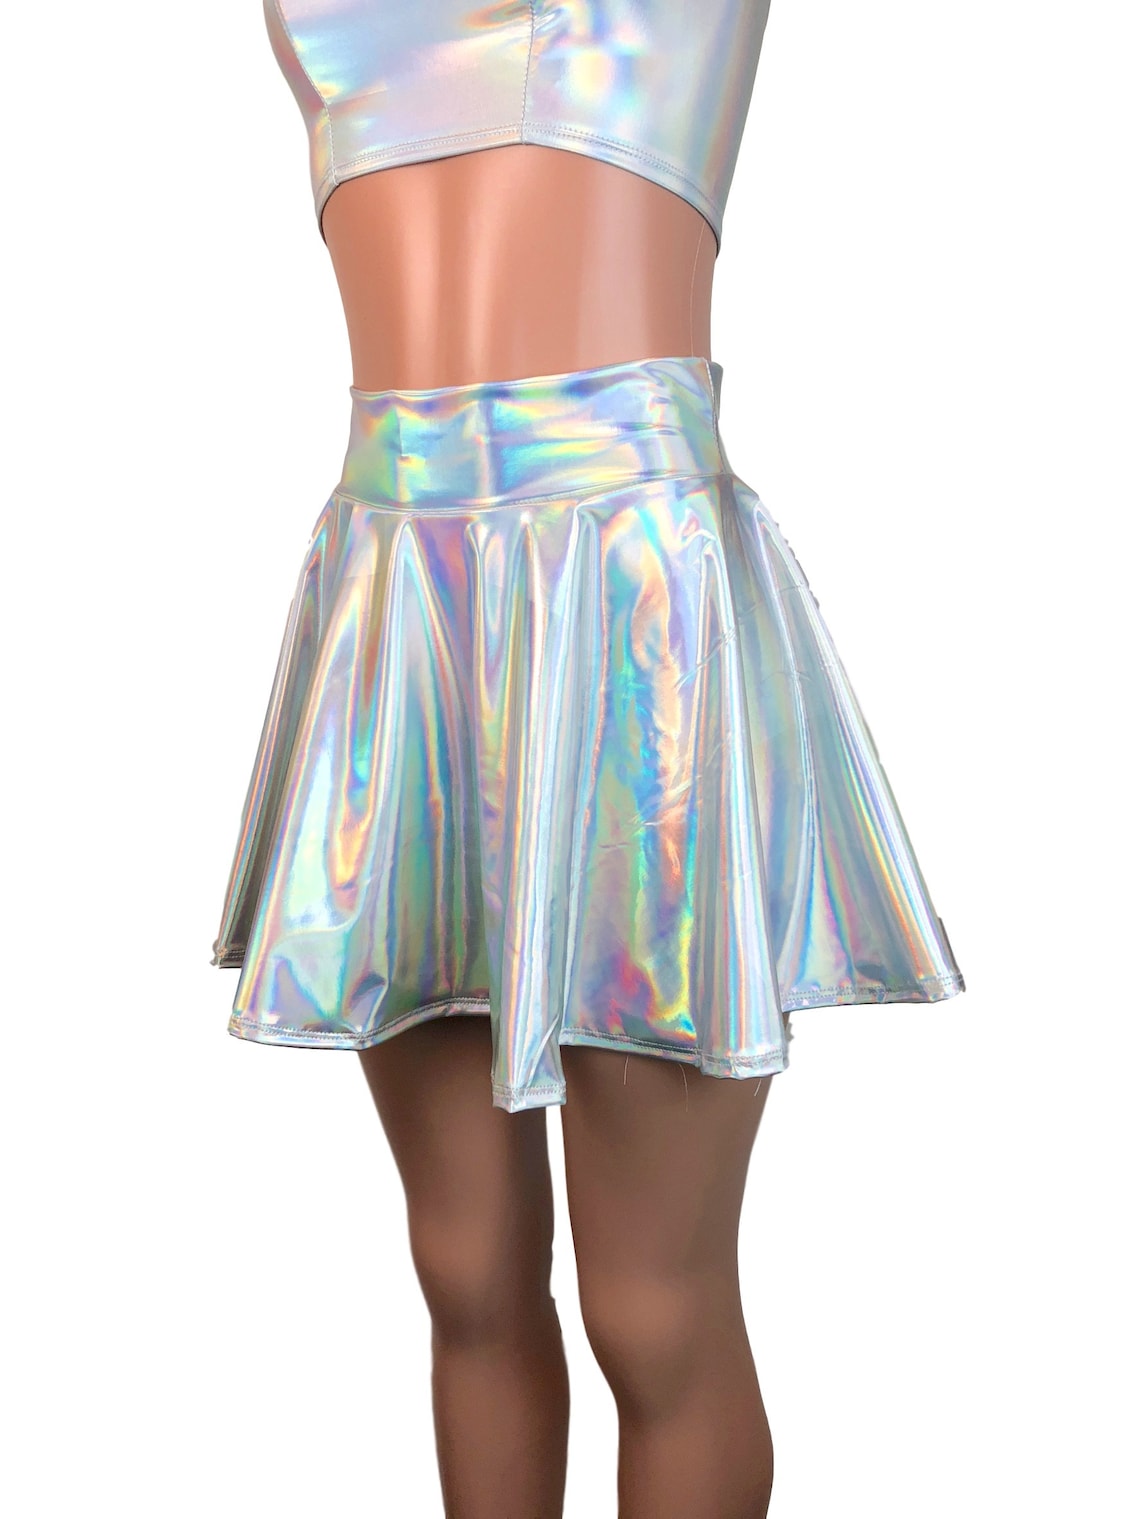 Opal Holographic Skater Skirt Holograph Rave Skirt | Etsy